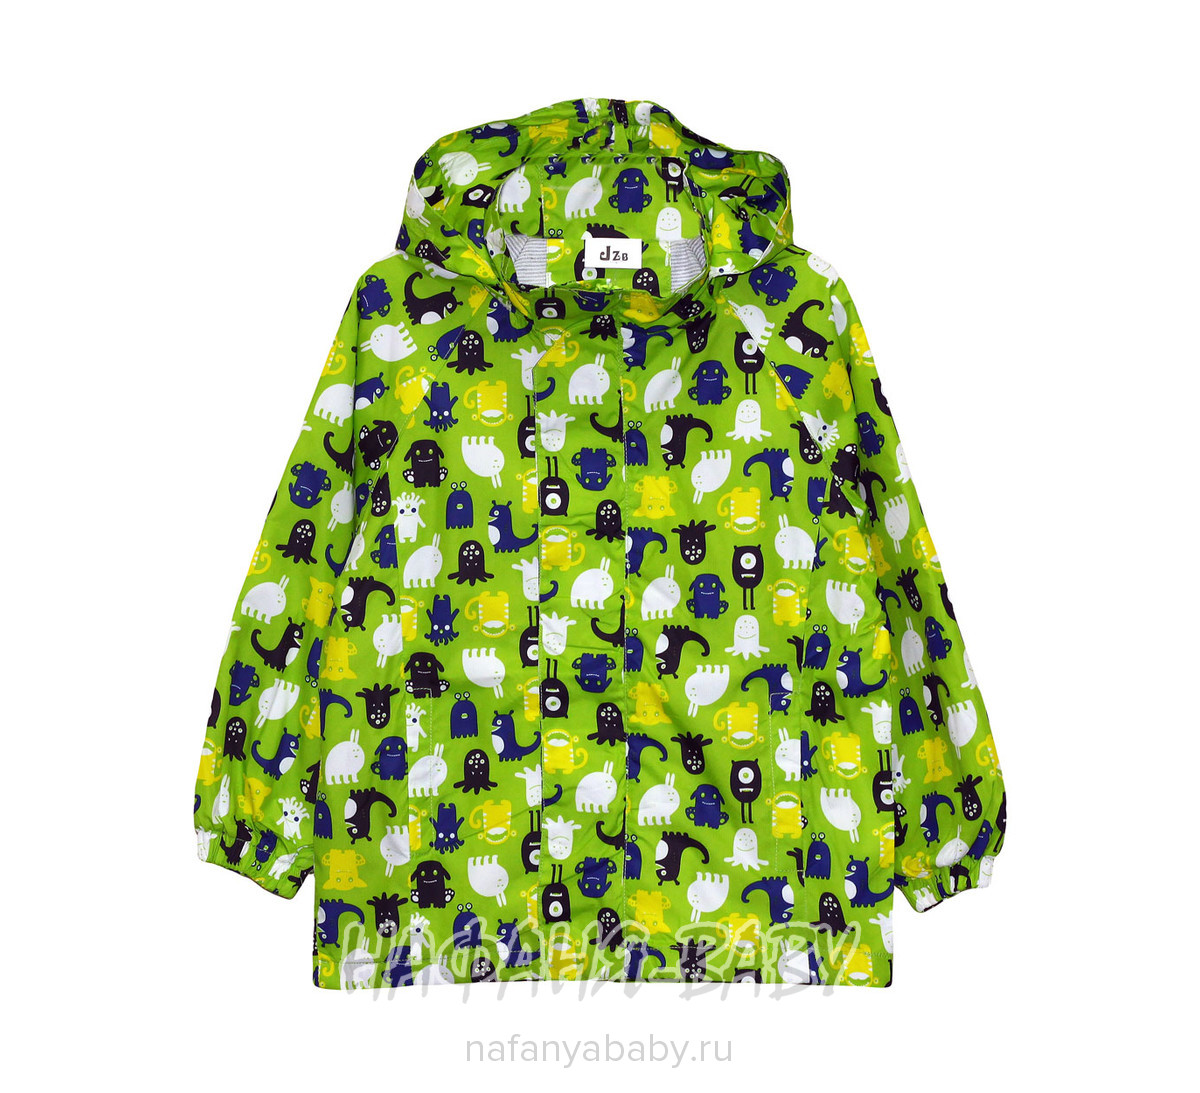 Детская куртка-ветровка JZB, купить в интернет магазине Нафаня. арт: 90608.